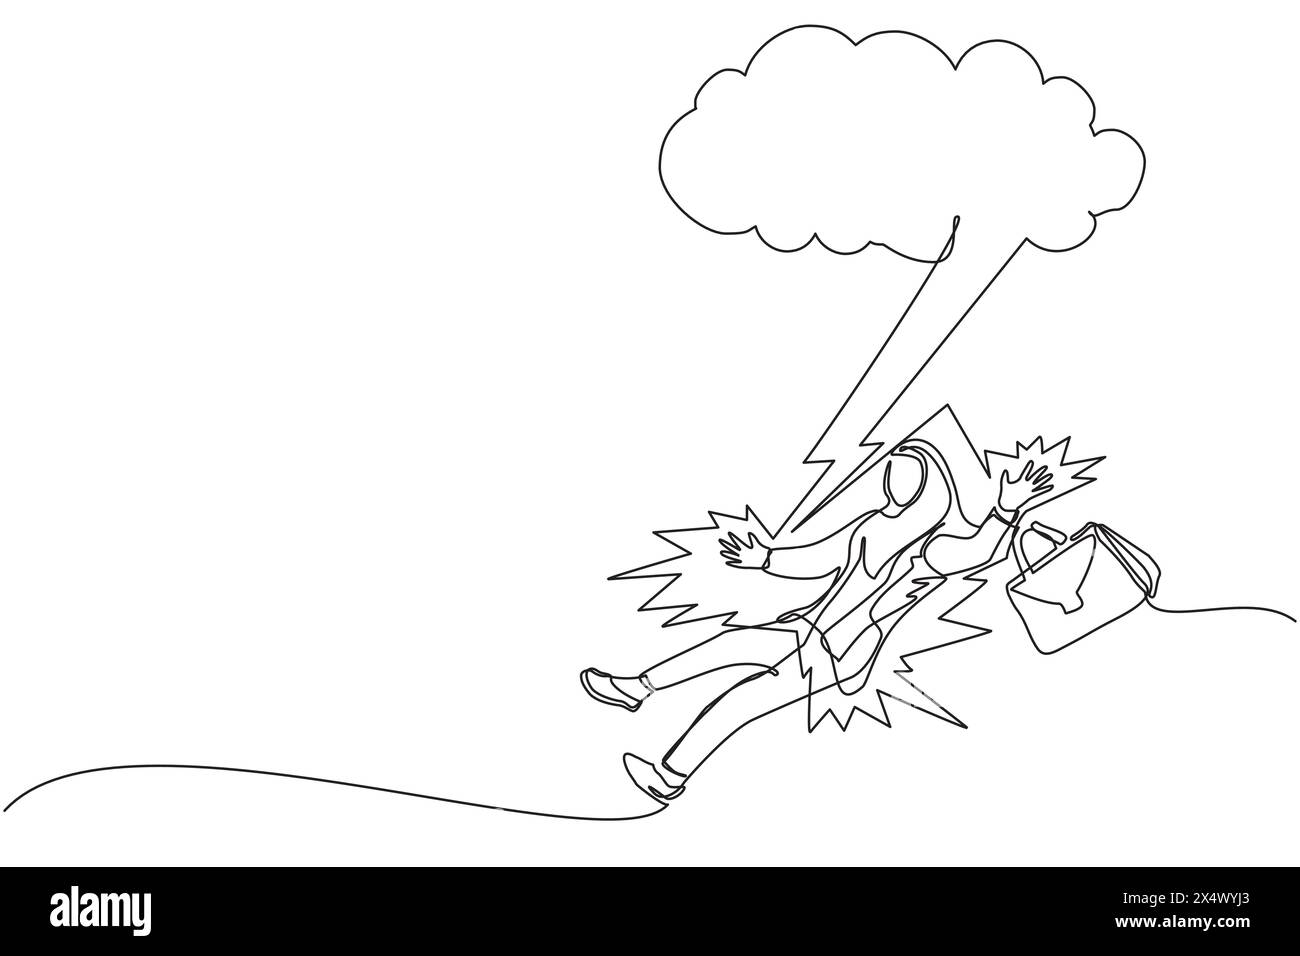 Simple une ligne dessinant homme d'affaires arabe frappé par la foudre ou le tonnerre d'un nuage sombre. Malchance, misère, malheureux, malchanceux, désastre, risque, et d Illustration de Vecteur